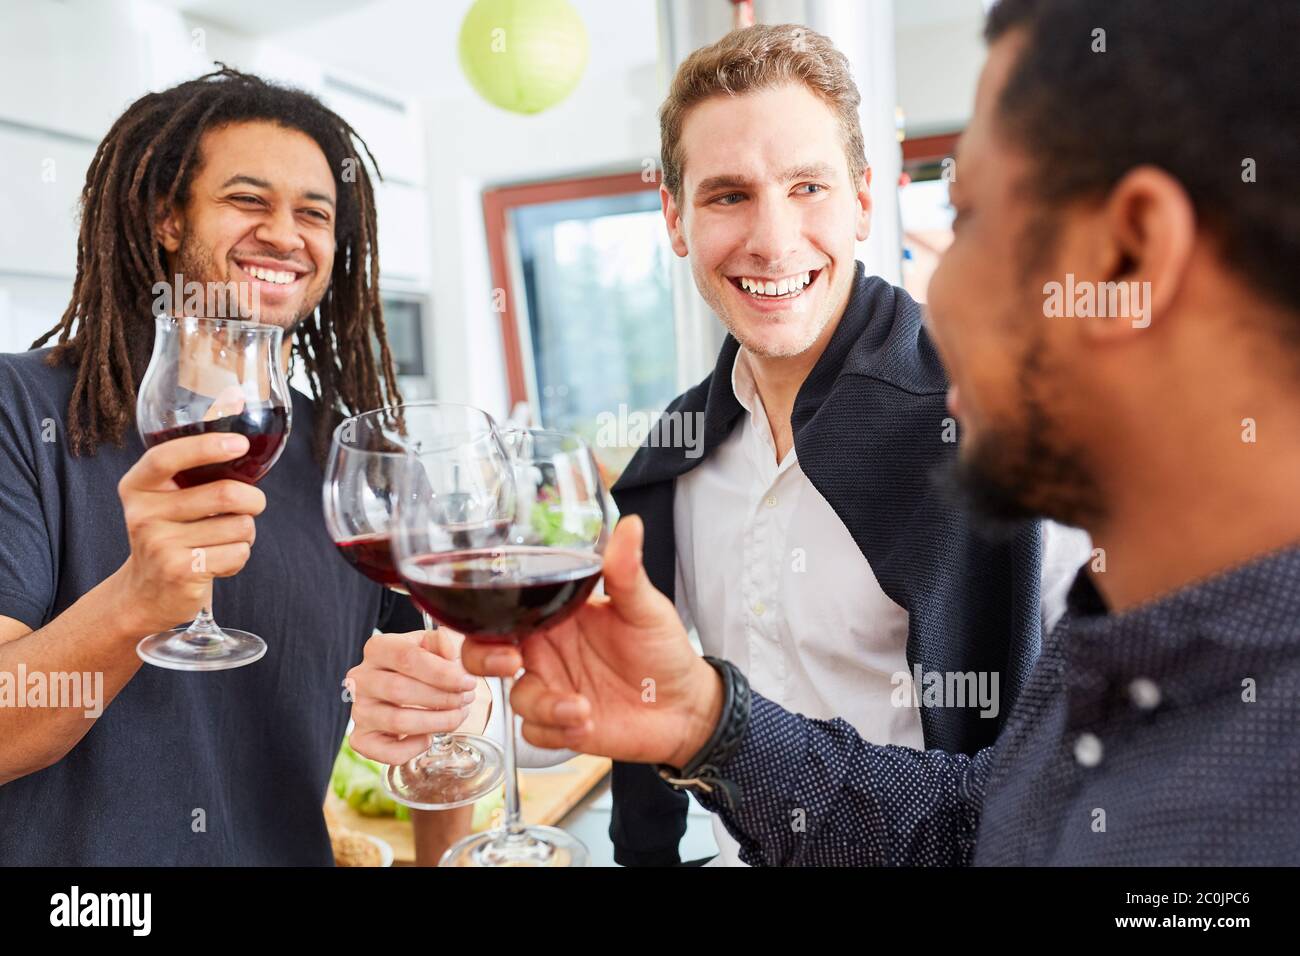 Uomini felici come amici si levano in piedi e bevono il vino insieme nella cucina Foto Stock